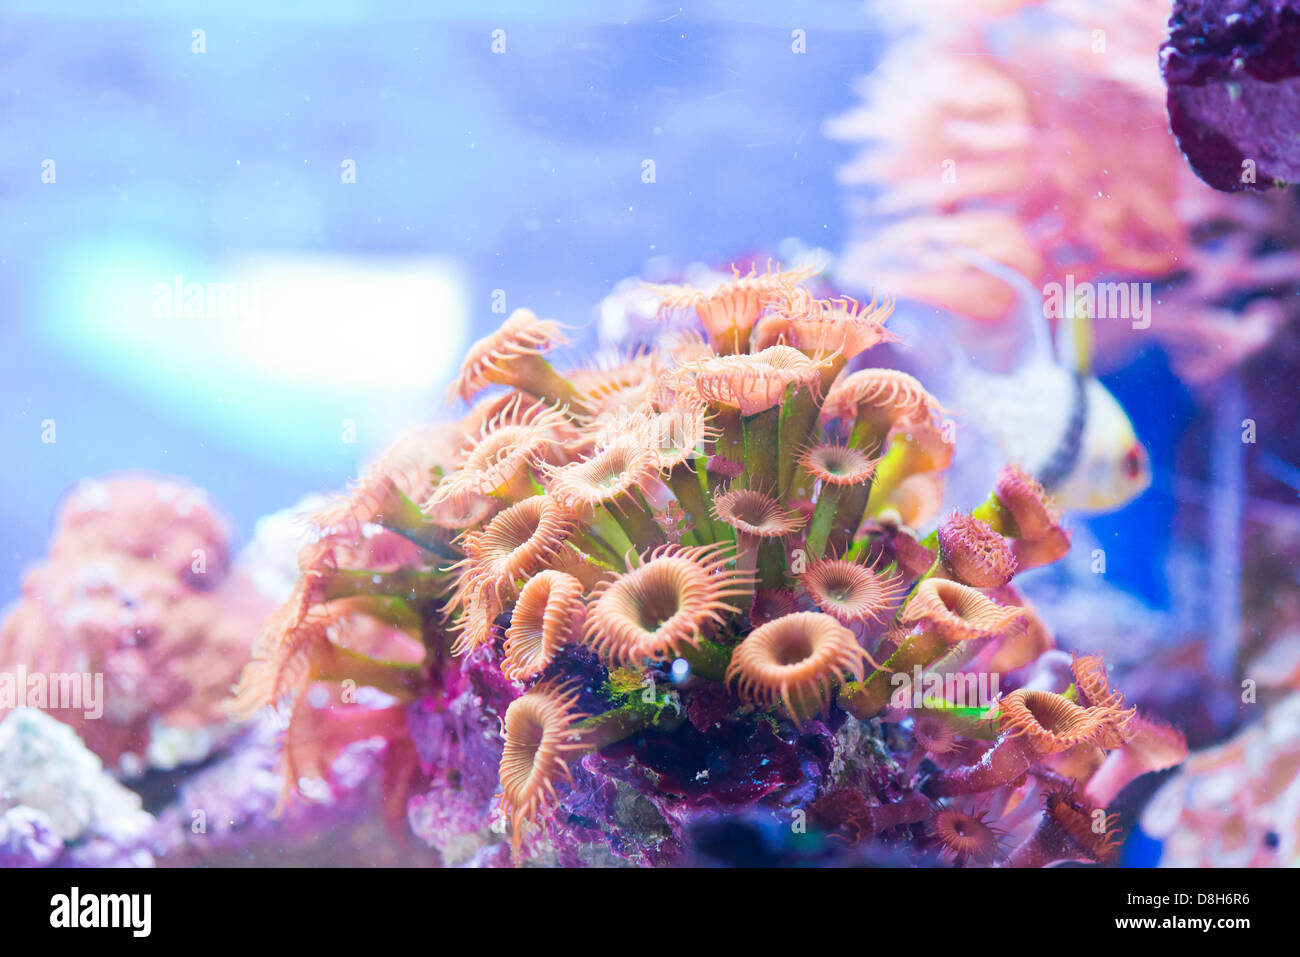 Spp Zoanthus coloré - Mer de Corail Banque D'Images